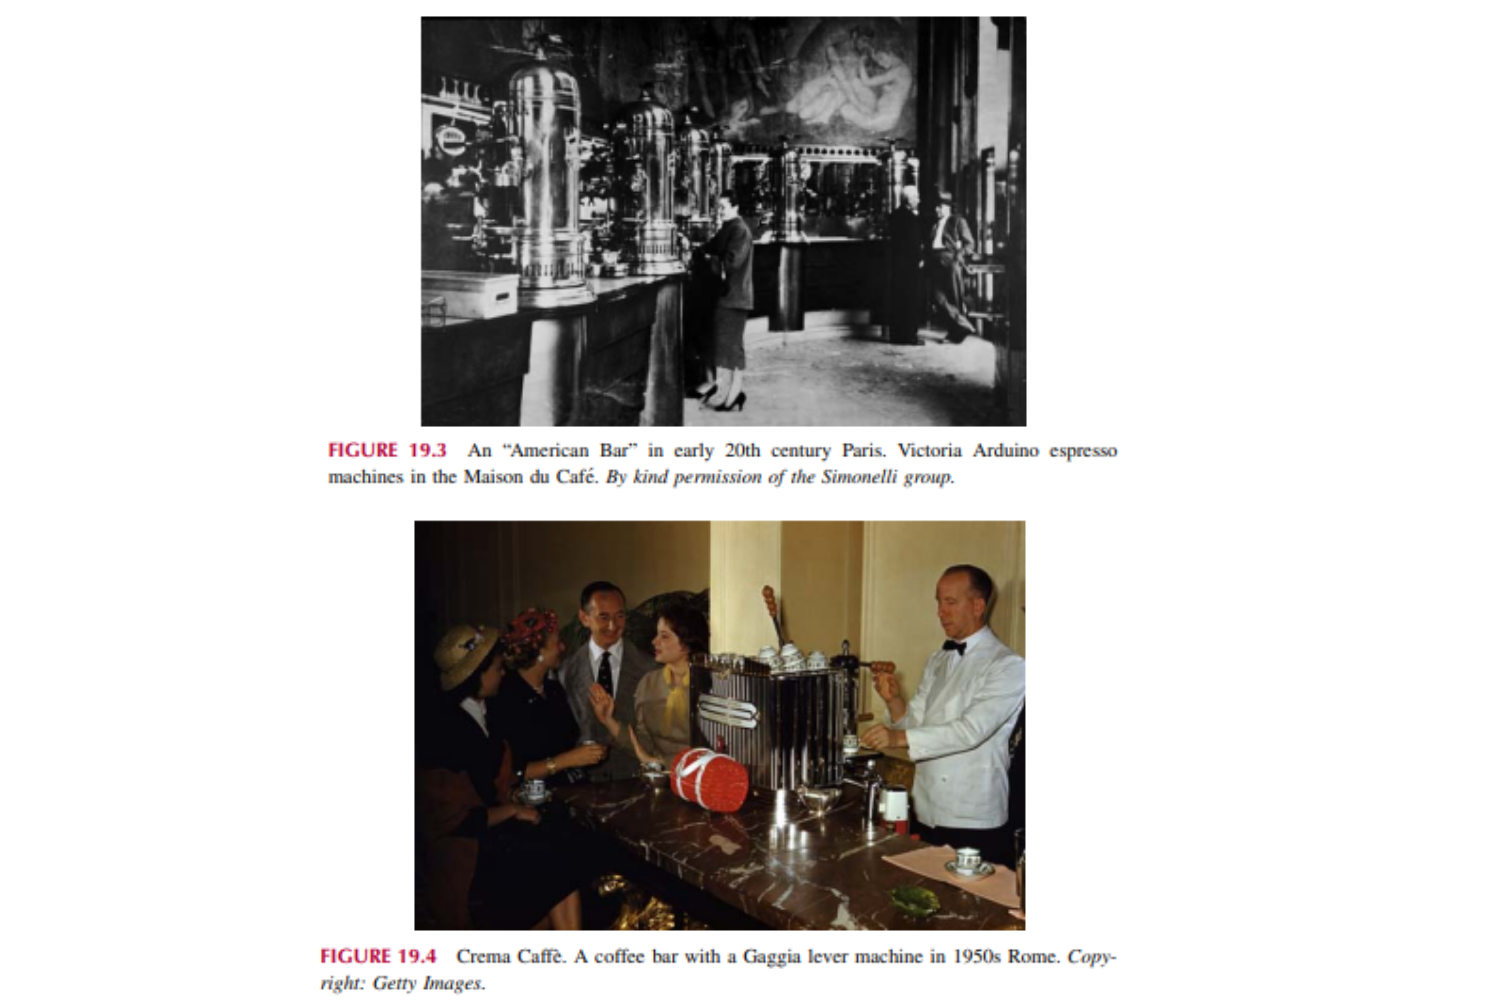 Một “American Bar” ở Paris đầu thế kỷ 20. Máy pha cà phê espresso Victoria Arduino tại Maison du Cafe'. Cà phê Crema`. Một quán cà phê với máy đòn bẩy Gaggia ở Rome những năm 1950.